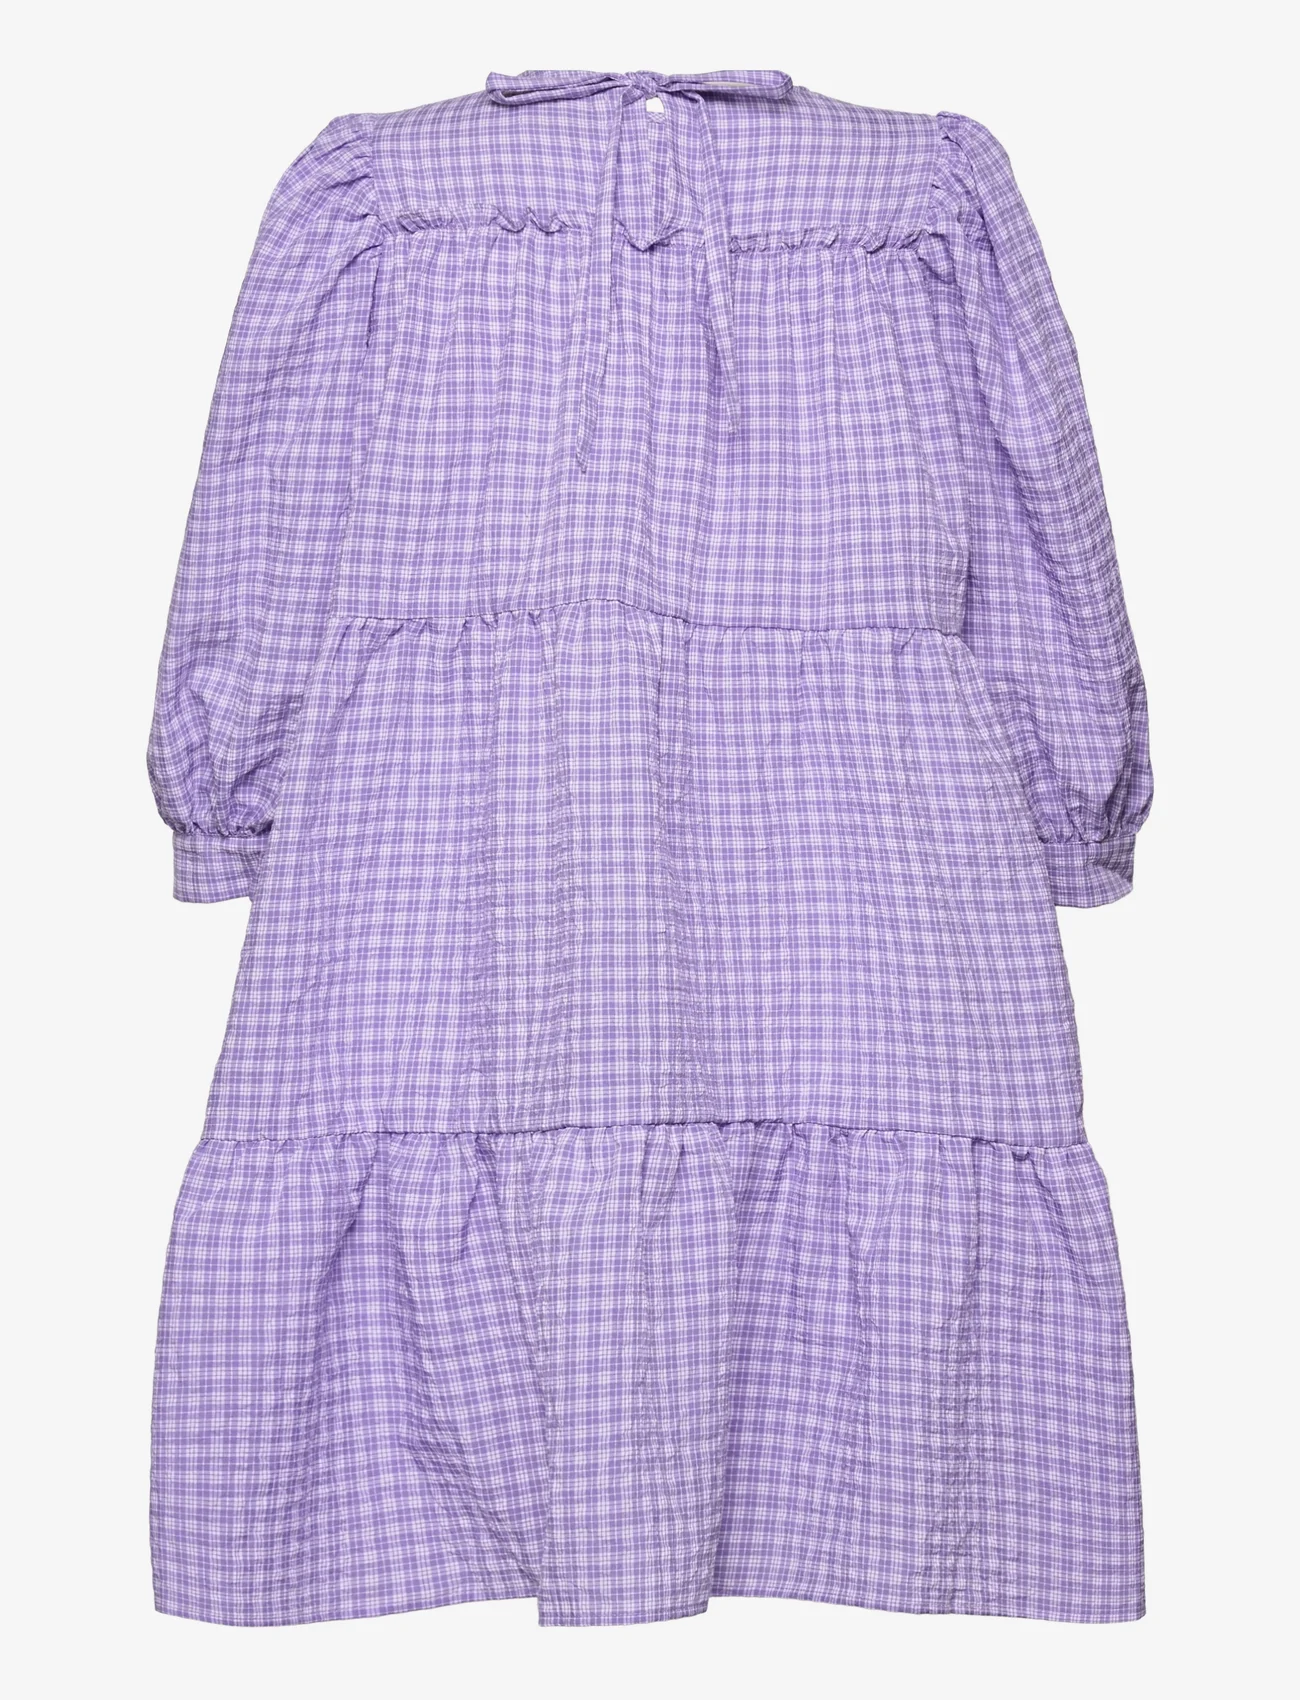 Minus - Rowen kjole - lyhyet mekot - purple checked - 1